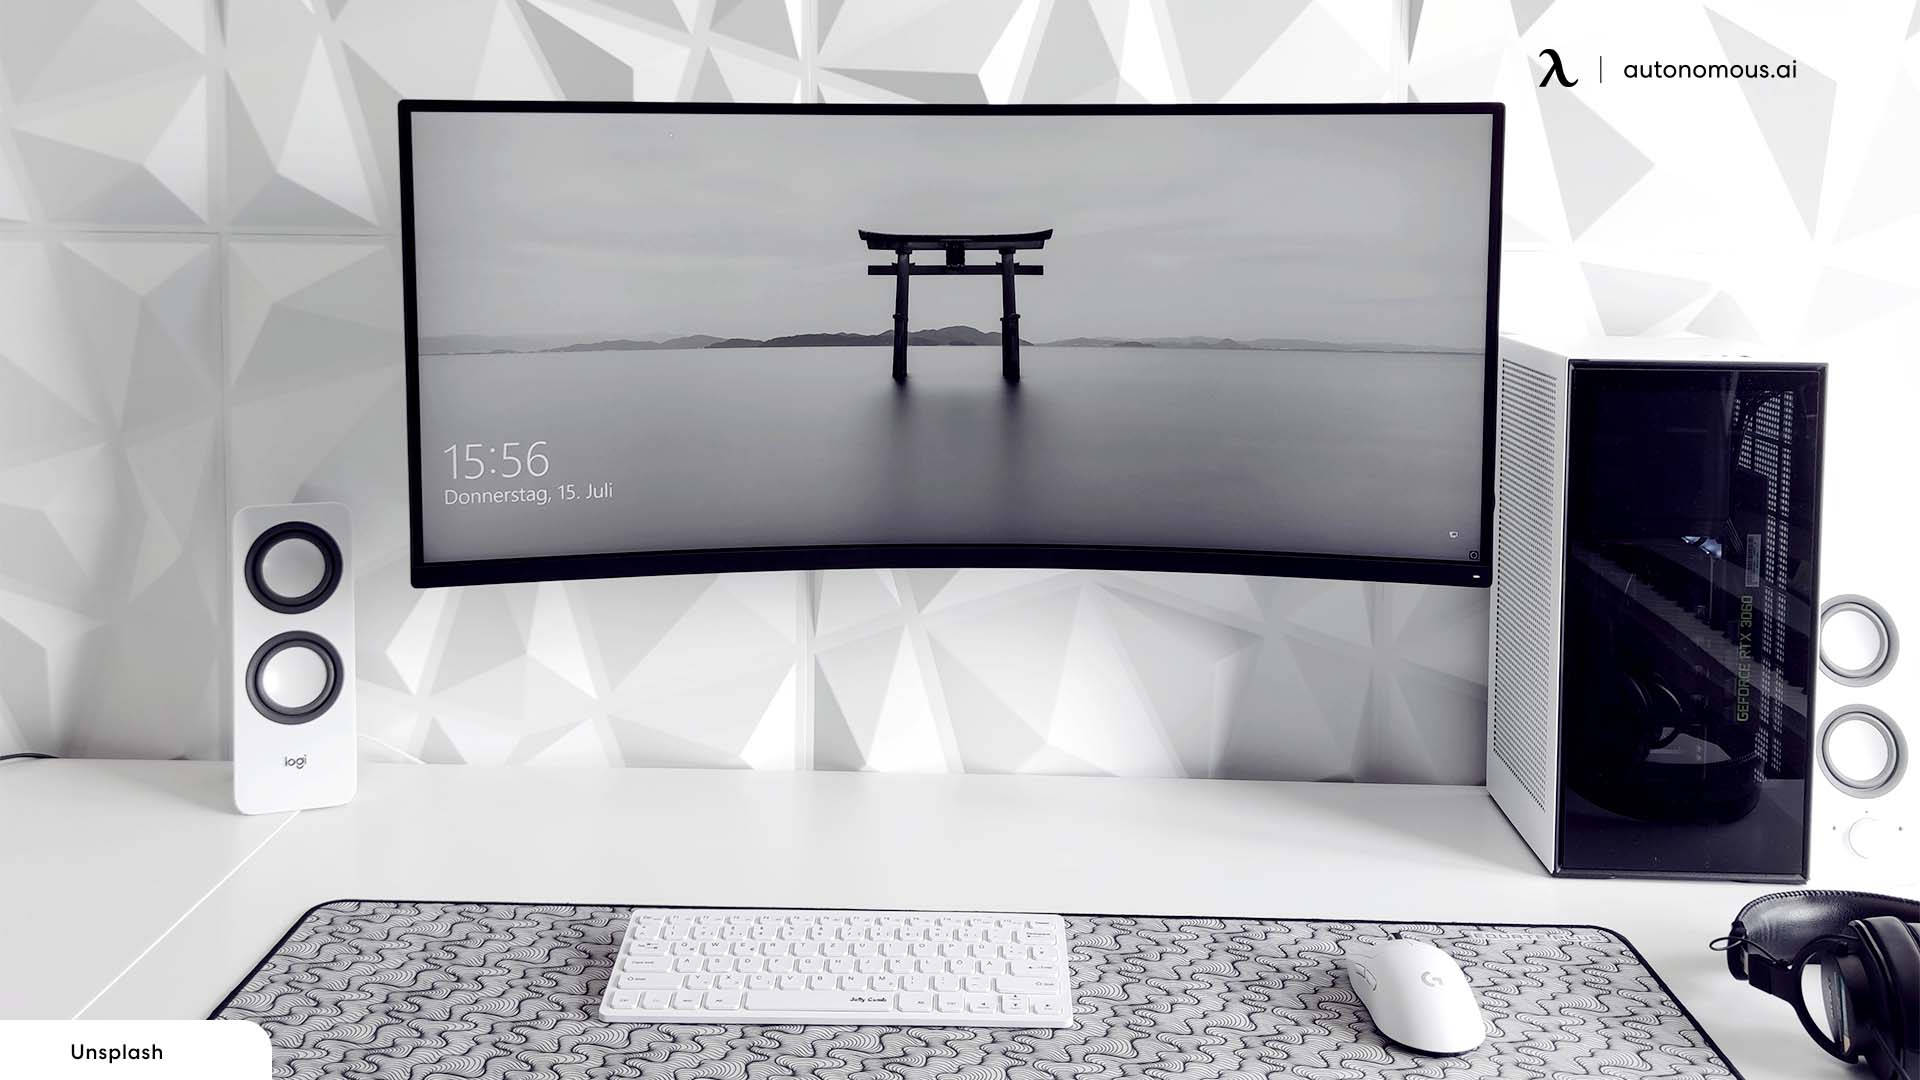 Estiloclásico-moderno: Una Pc Totalmente Blanca Con Una Interfaz Elegante. Fondo de pantalla